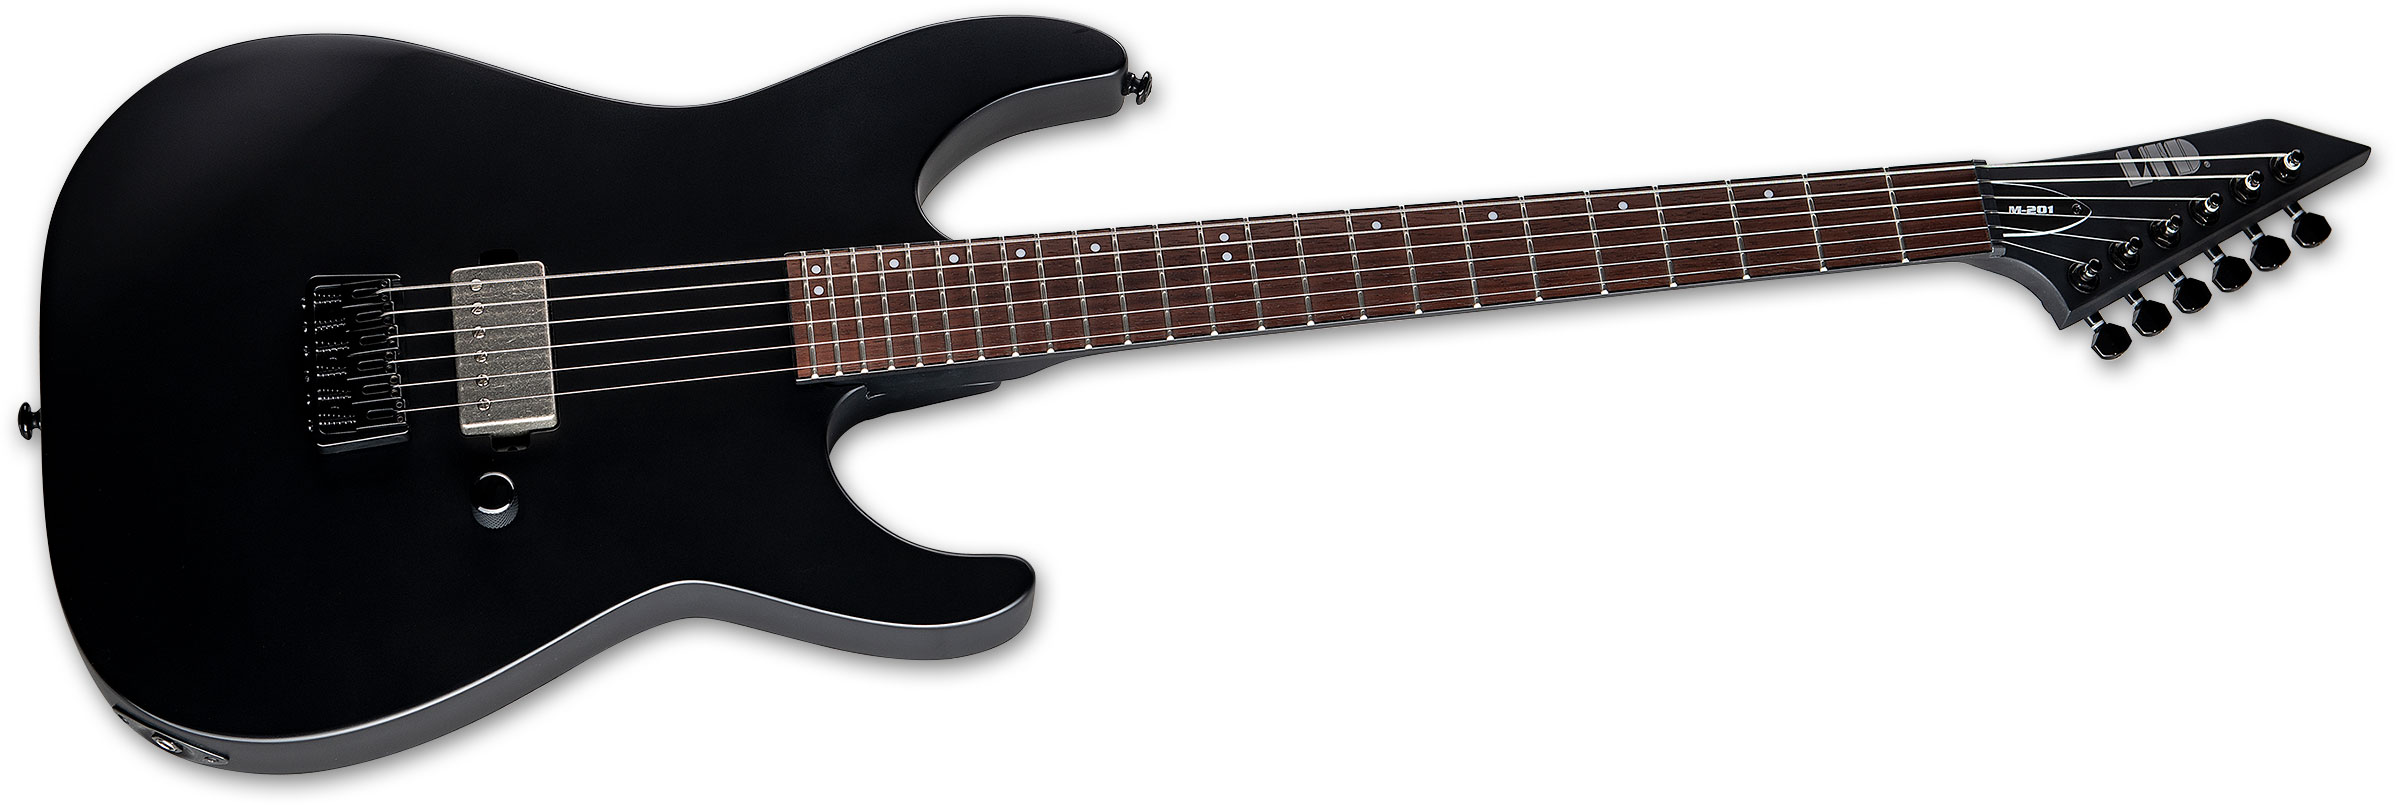 Ltd M-201ht 1h Ht Jat - Black Satin - Elektrische gitaar in Str-vorm - Variation 1